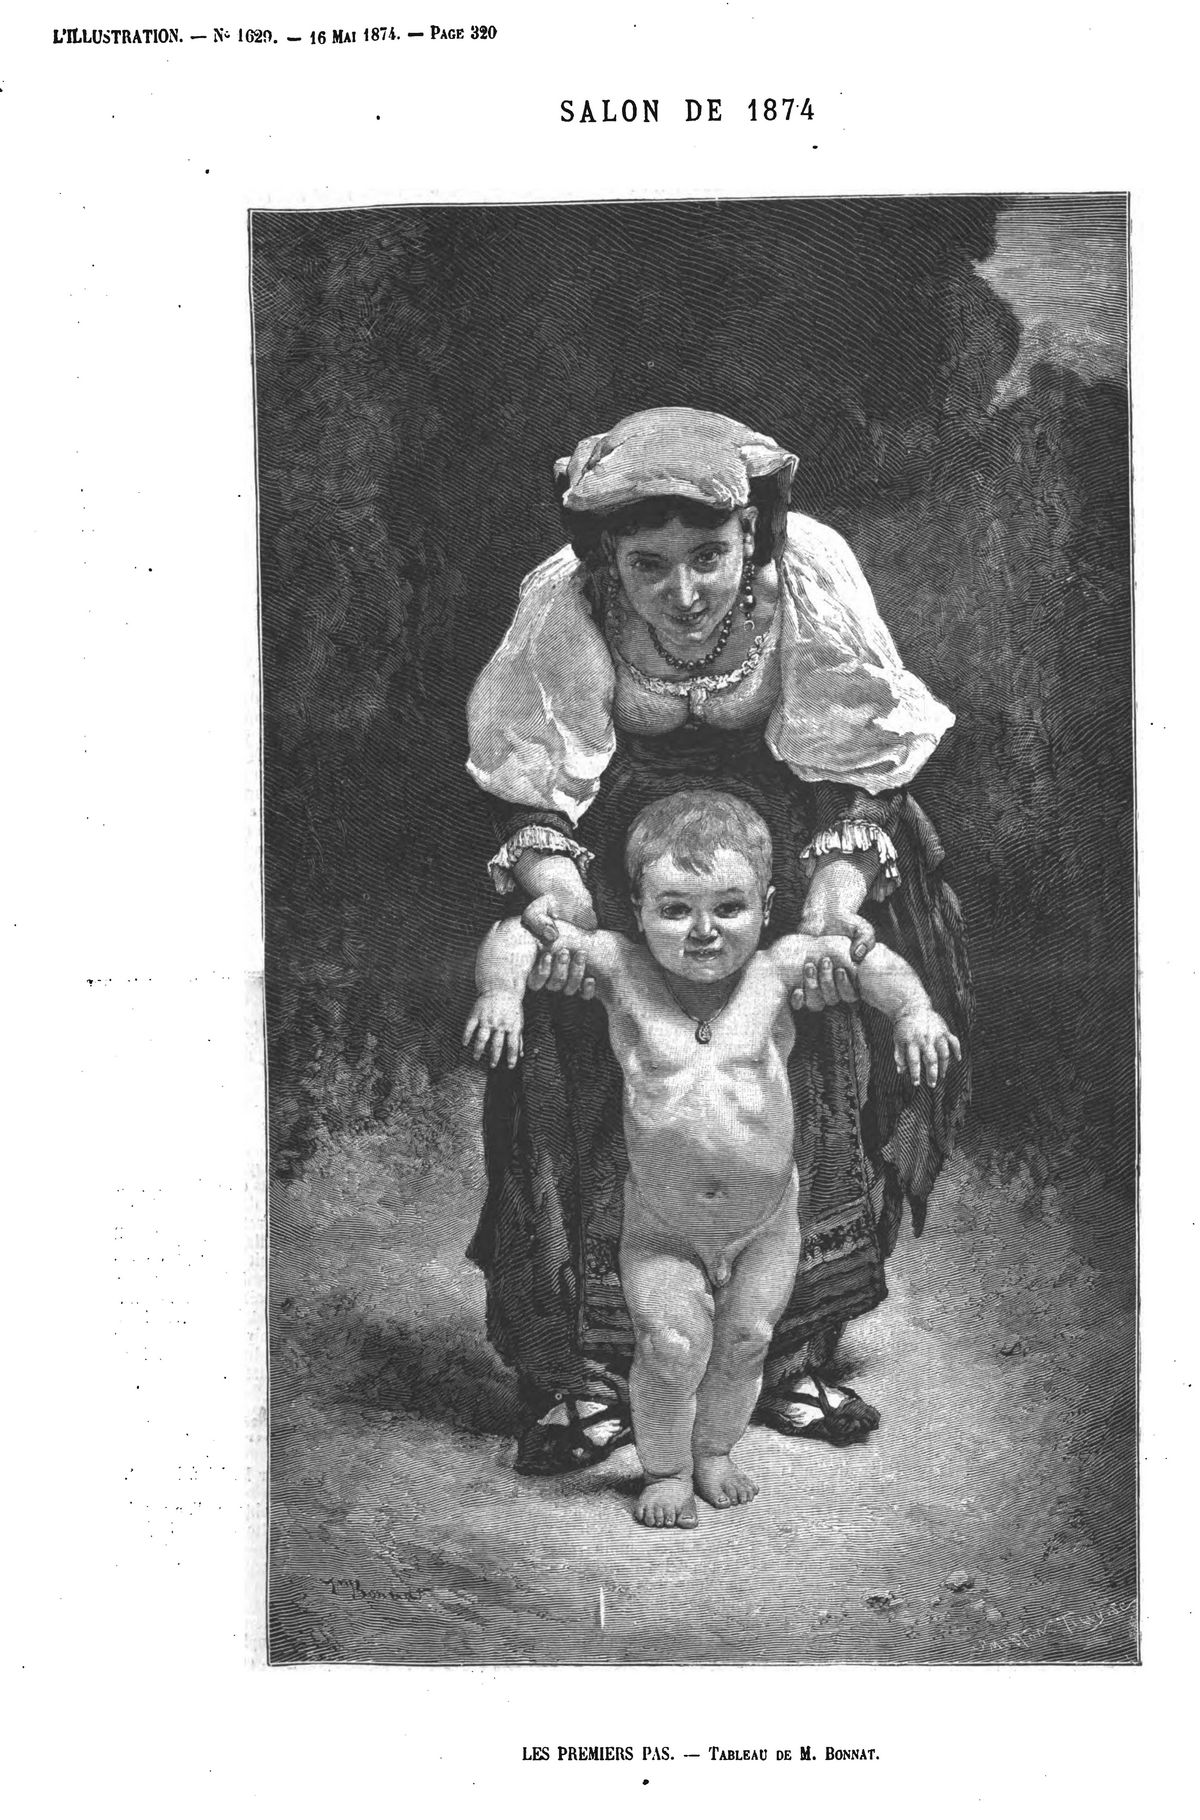 Salon de 1874 : Les premiers pas, tableau de M. Bonnat.M.